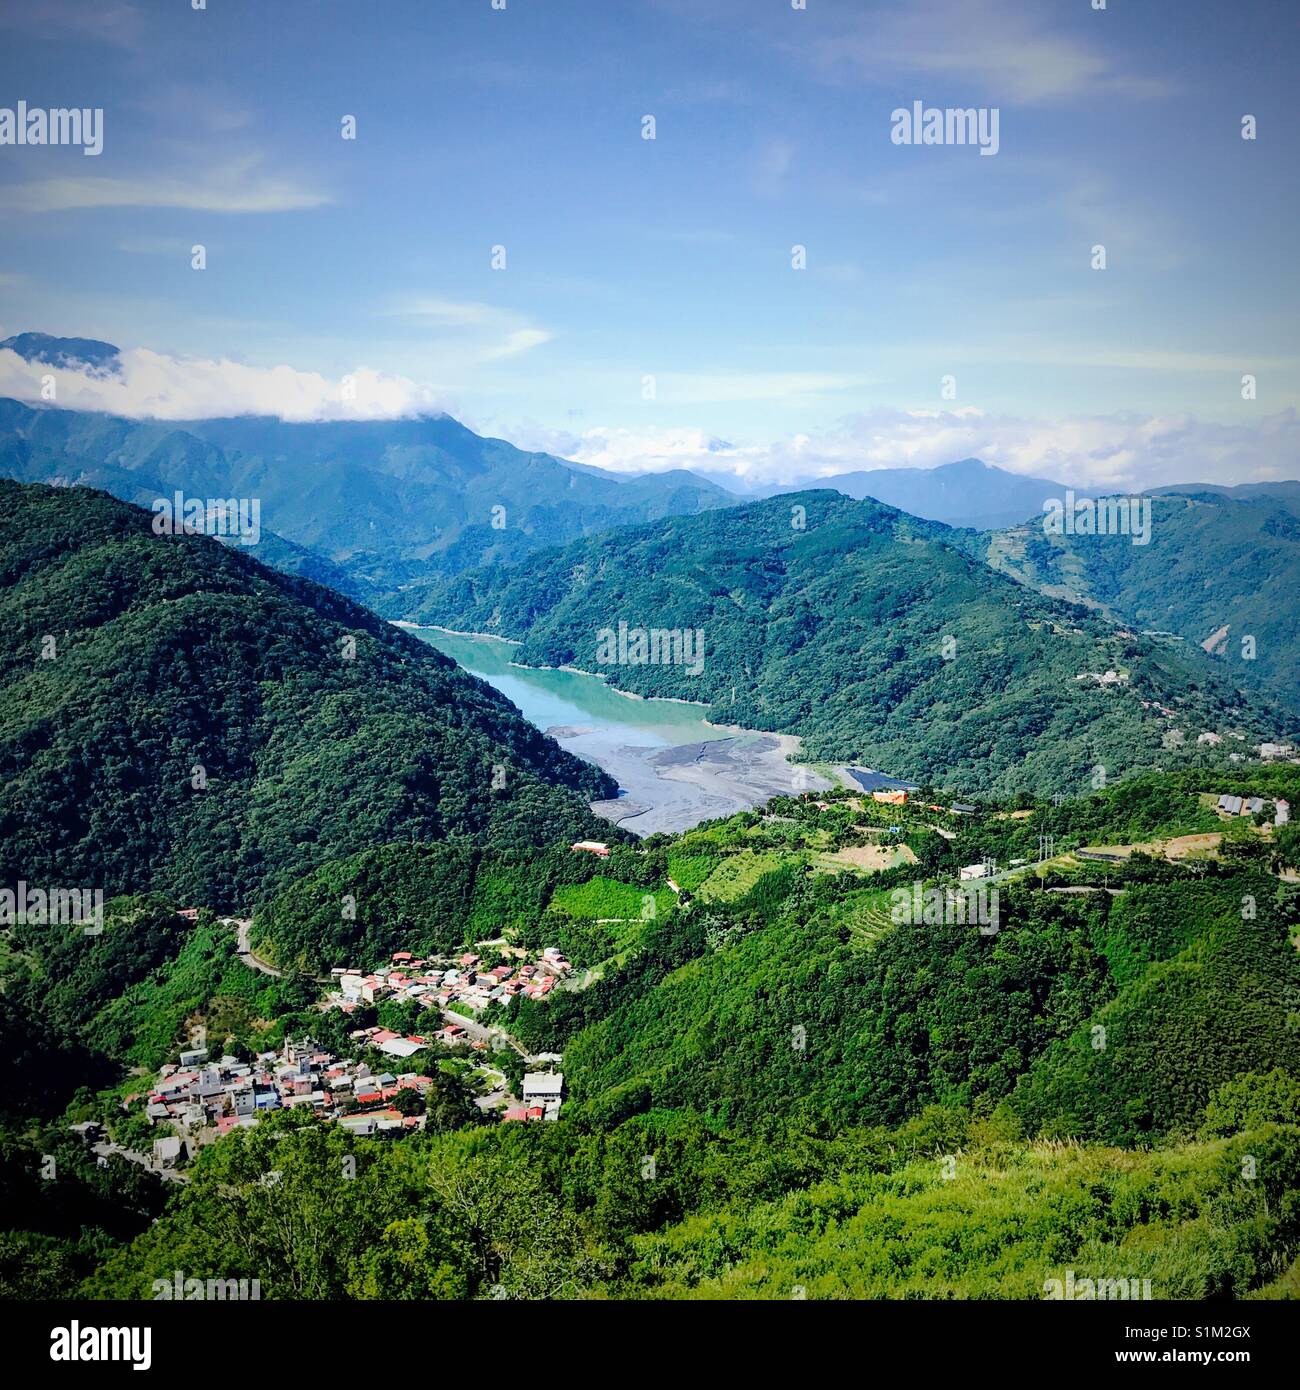 Vista de la región montañosa de Taiwán Foto de stock